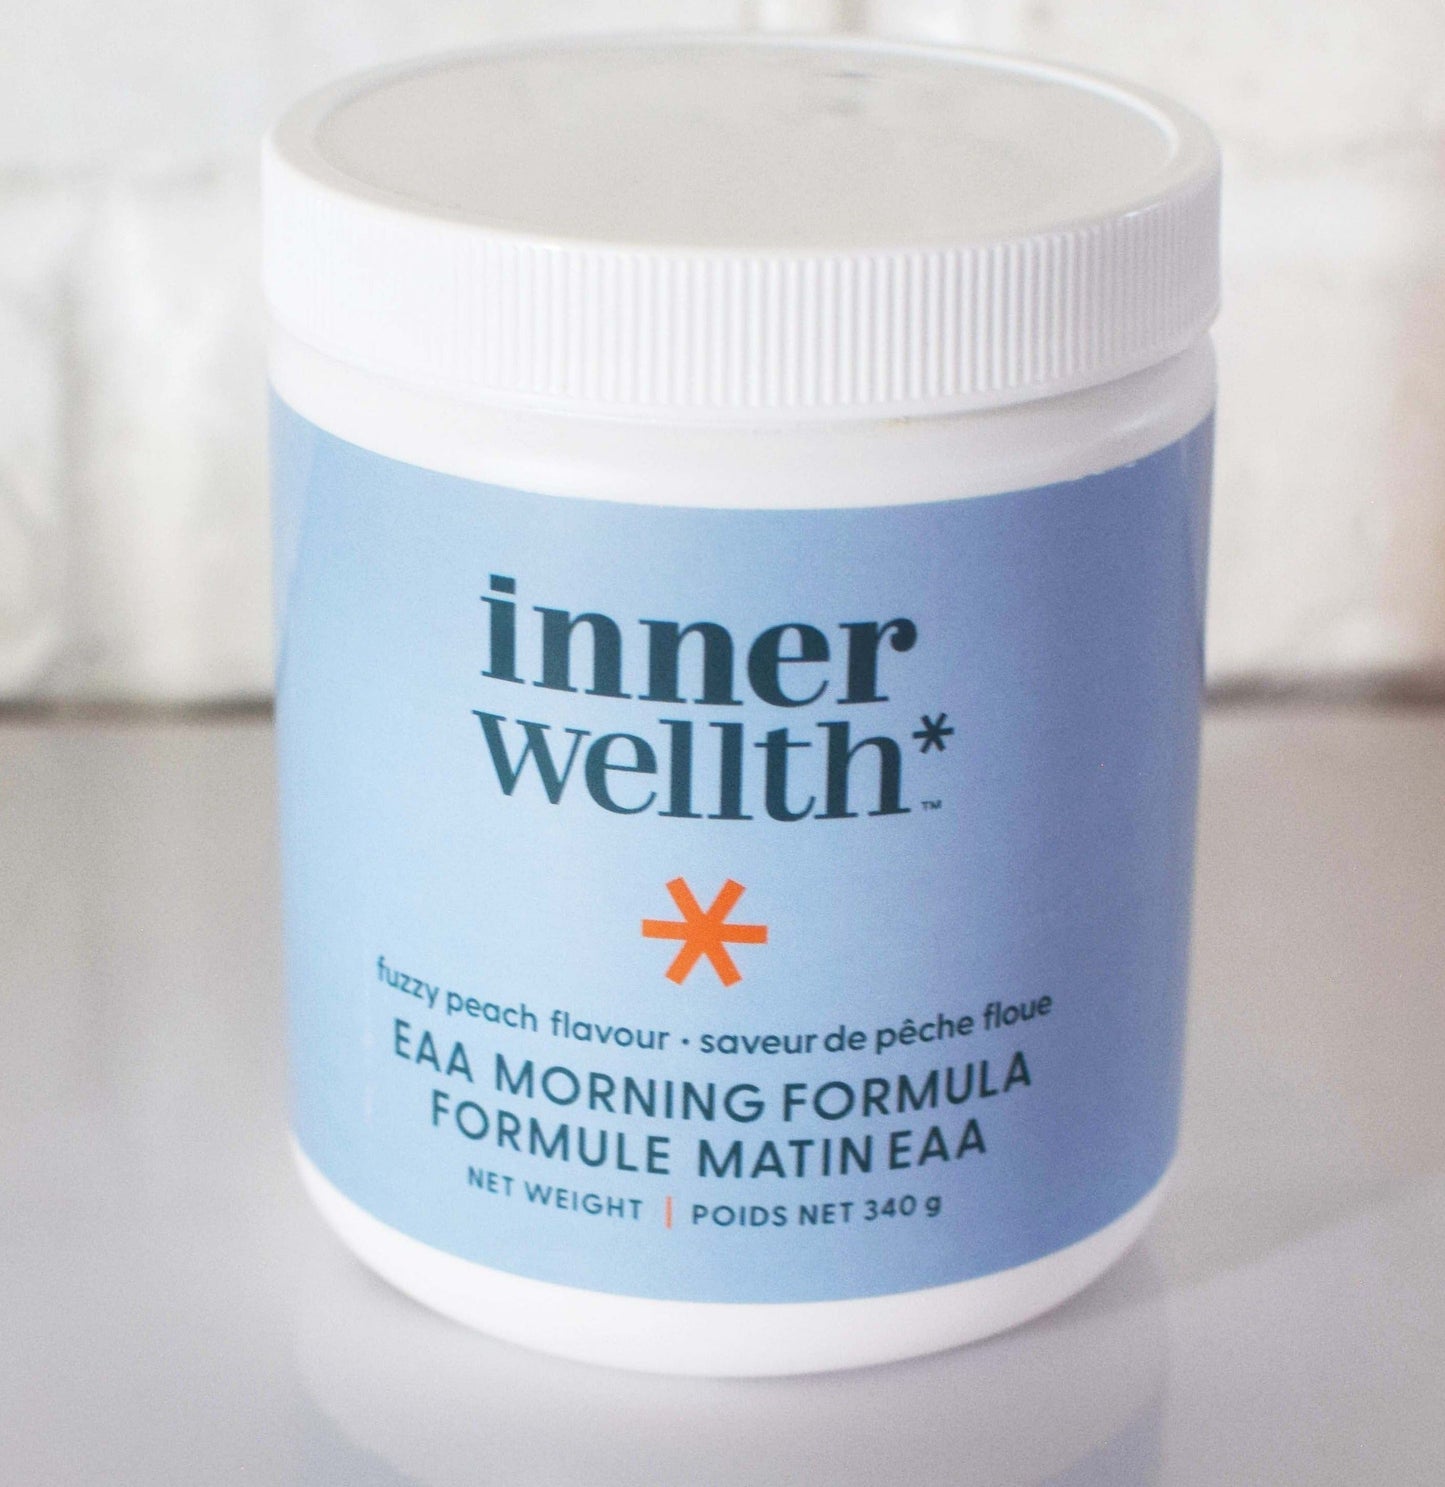 Inner Wellth EAA Morning Formula - Your Inner Wellth